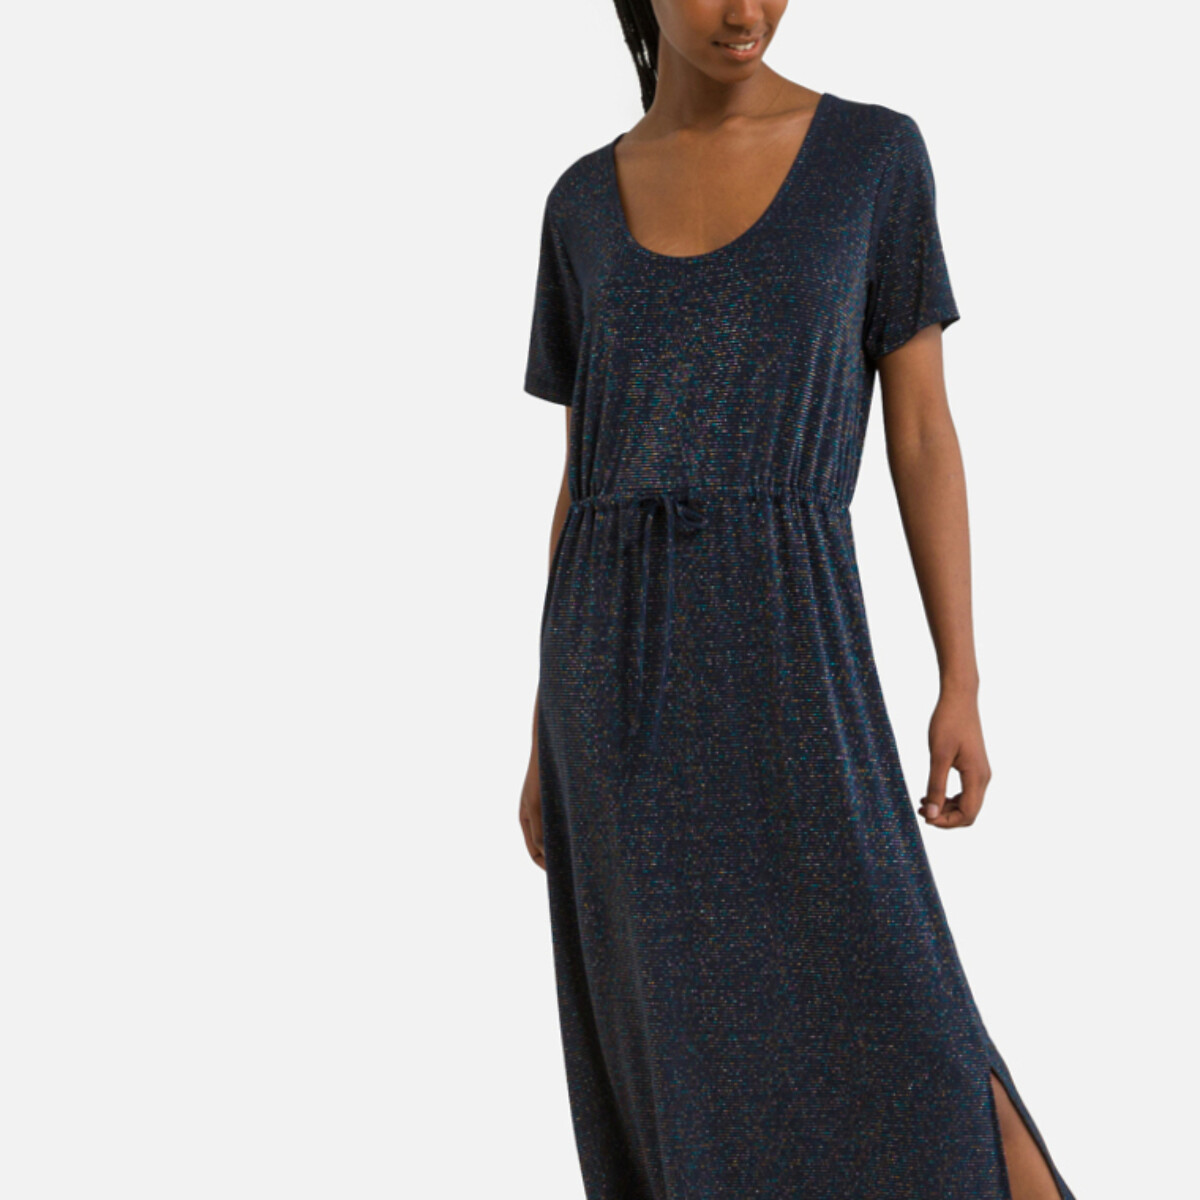 Платье Длинное с эффектом блеска S синий LaRedoute, размер S - фото 1